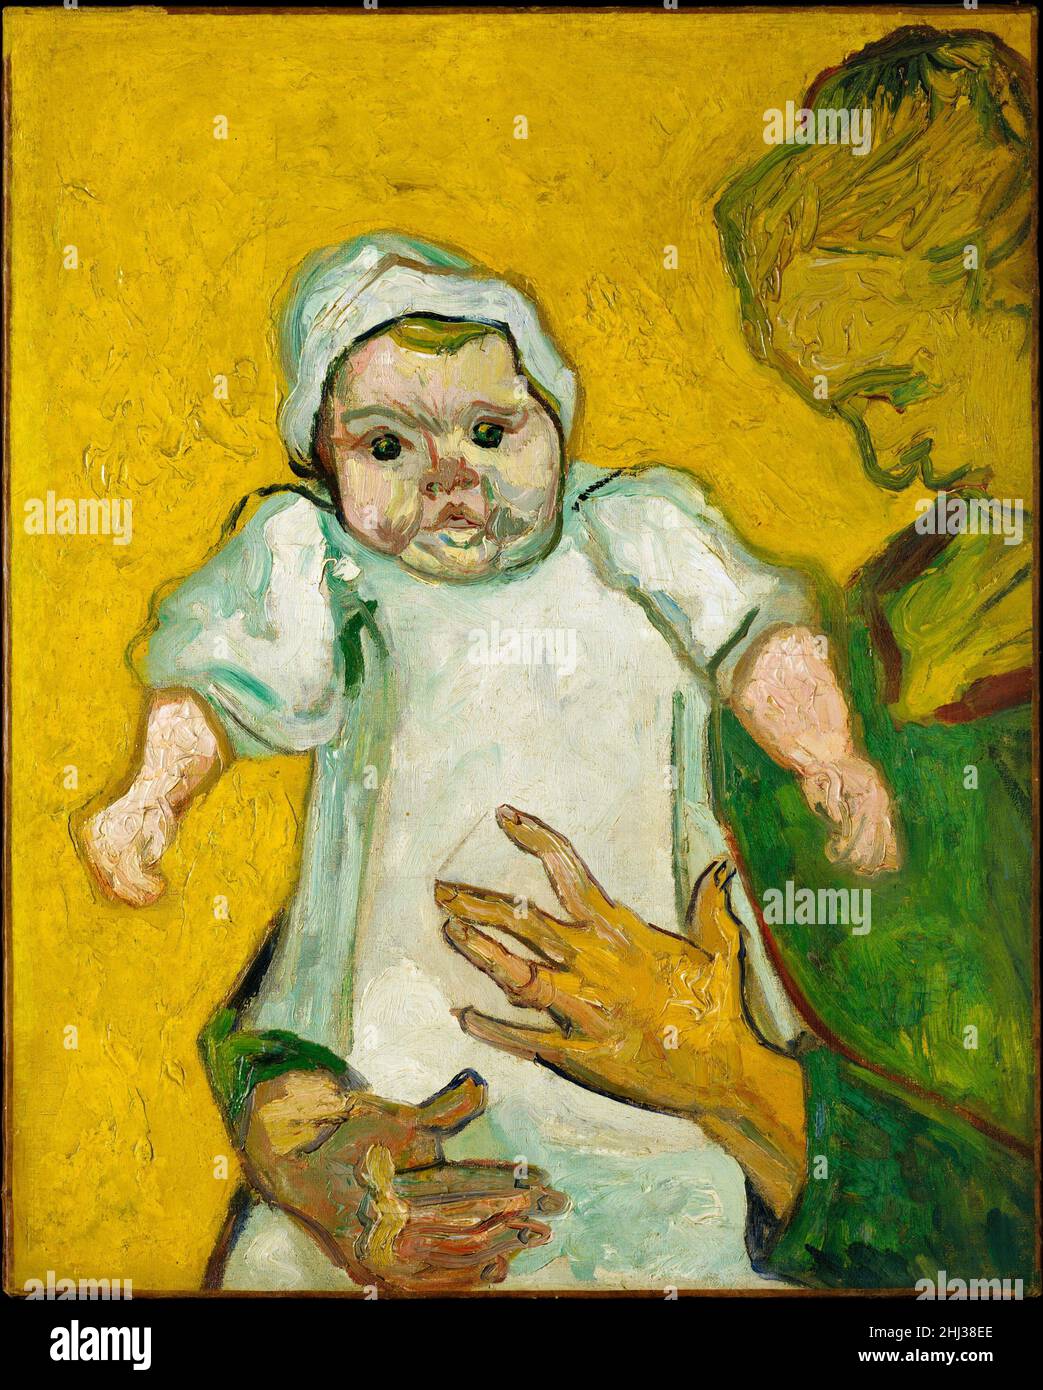 Madame Roulin y su bebé 1888 Vincent van Gogh Dutch Este retrato vigorosamente pintado de Augustine Roulin y su hija menor, Marcelle, es uno de los muchos y evocadores renderings de Van Gogh de la familia Roulin, realizado unos seis meses después de que el artista se trasladara de París a Arles. Van Gogh pintó a toda la familia del cartero local Joseph Roulin. Aquí, el infante chubbycheeked es el foco de la empresa. Su mayor expresión en un pincel espeso sugiere que el bebé puede haber posado para van Gogh, envuelto en el abrazo de su madre. Augustine Roulin, por el contrario, es un a Foto de stock